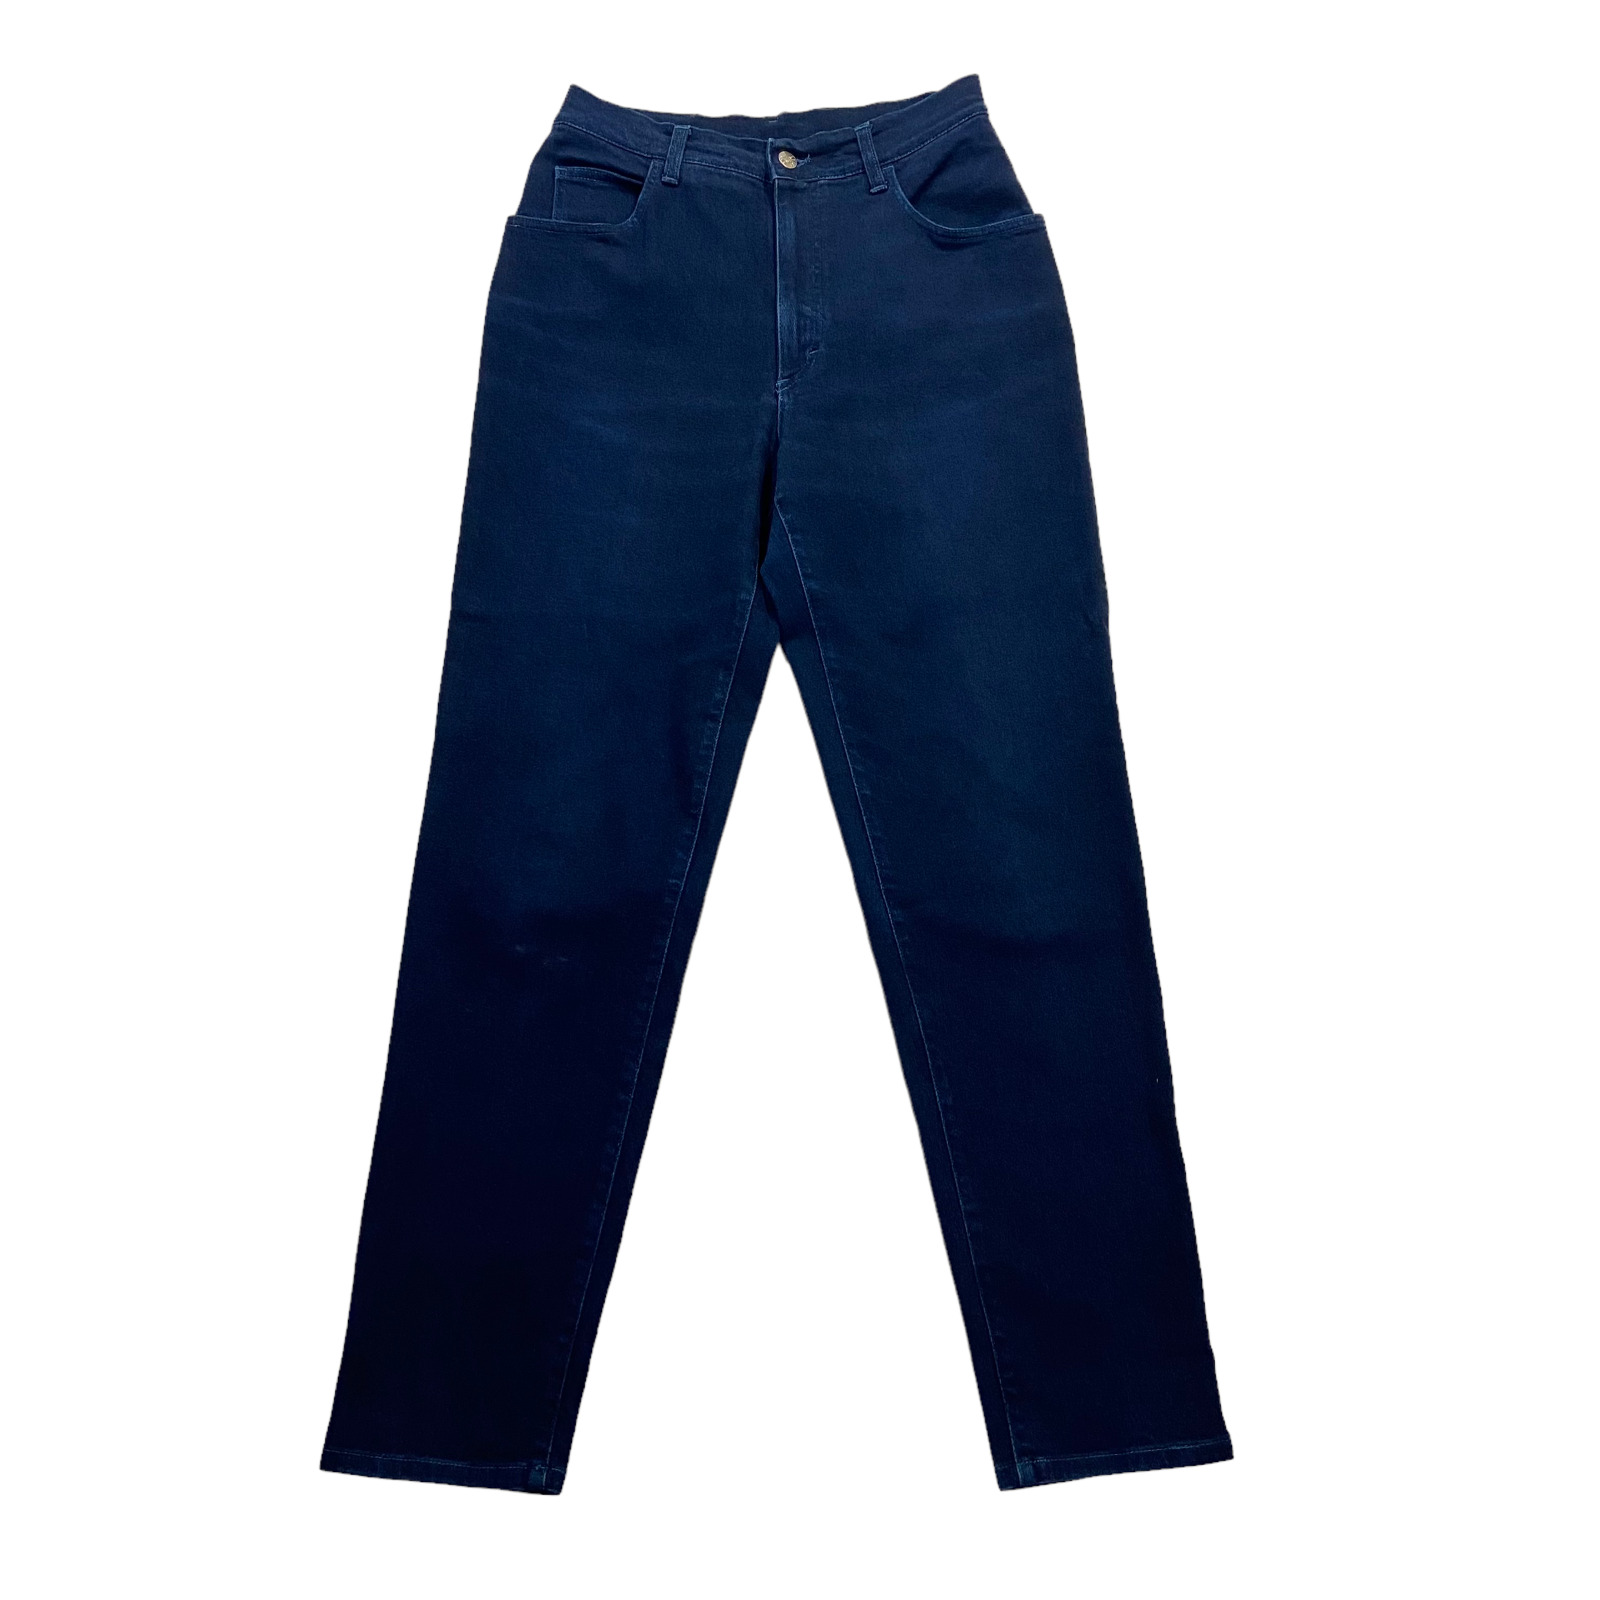 Belfe & Belfe The Basic Blue Tapered Jeans | Vintage … - Gem